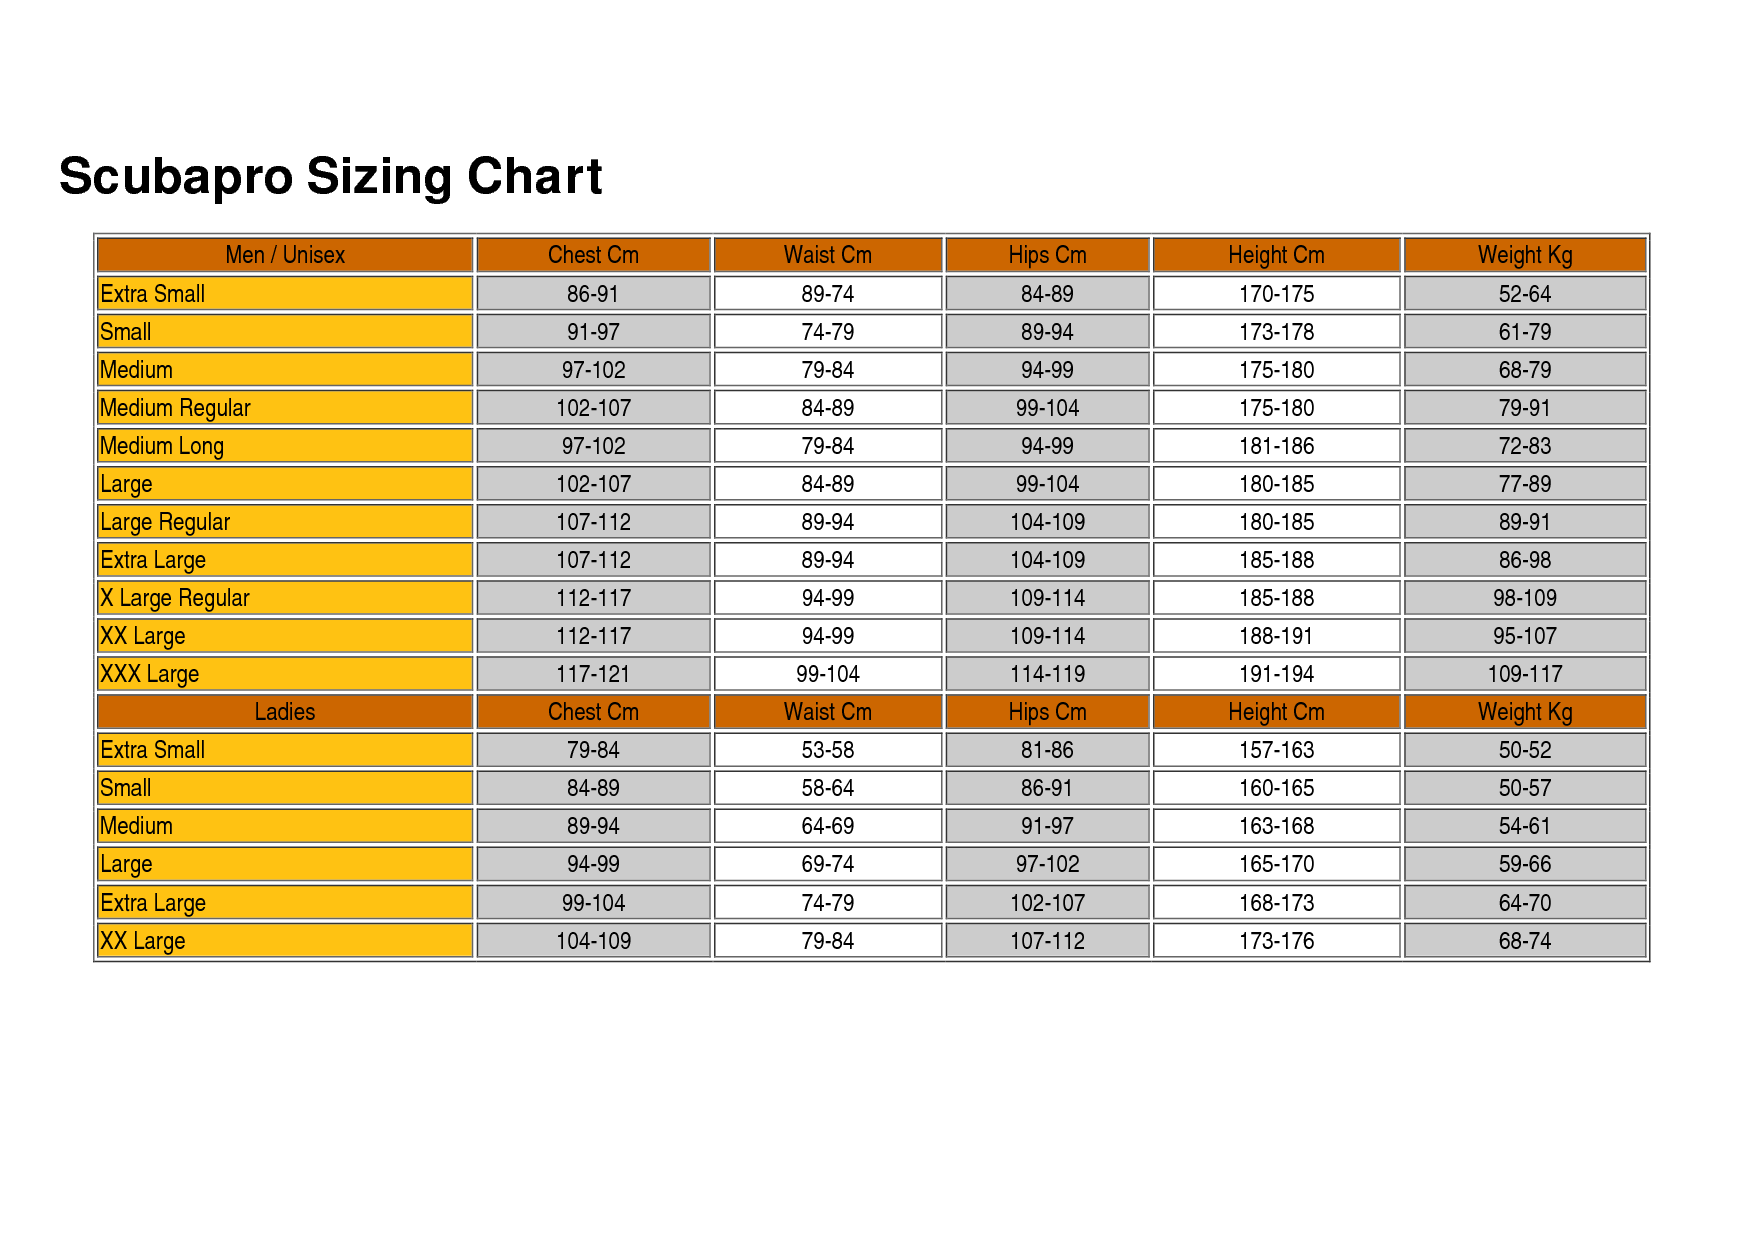 Scubapro size chart